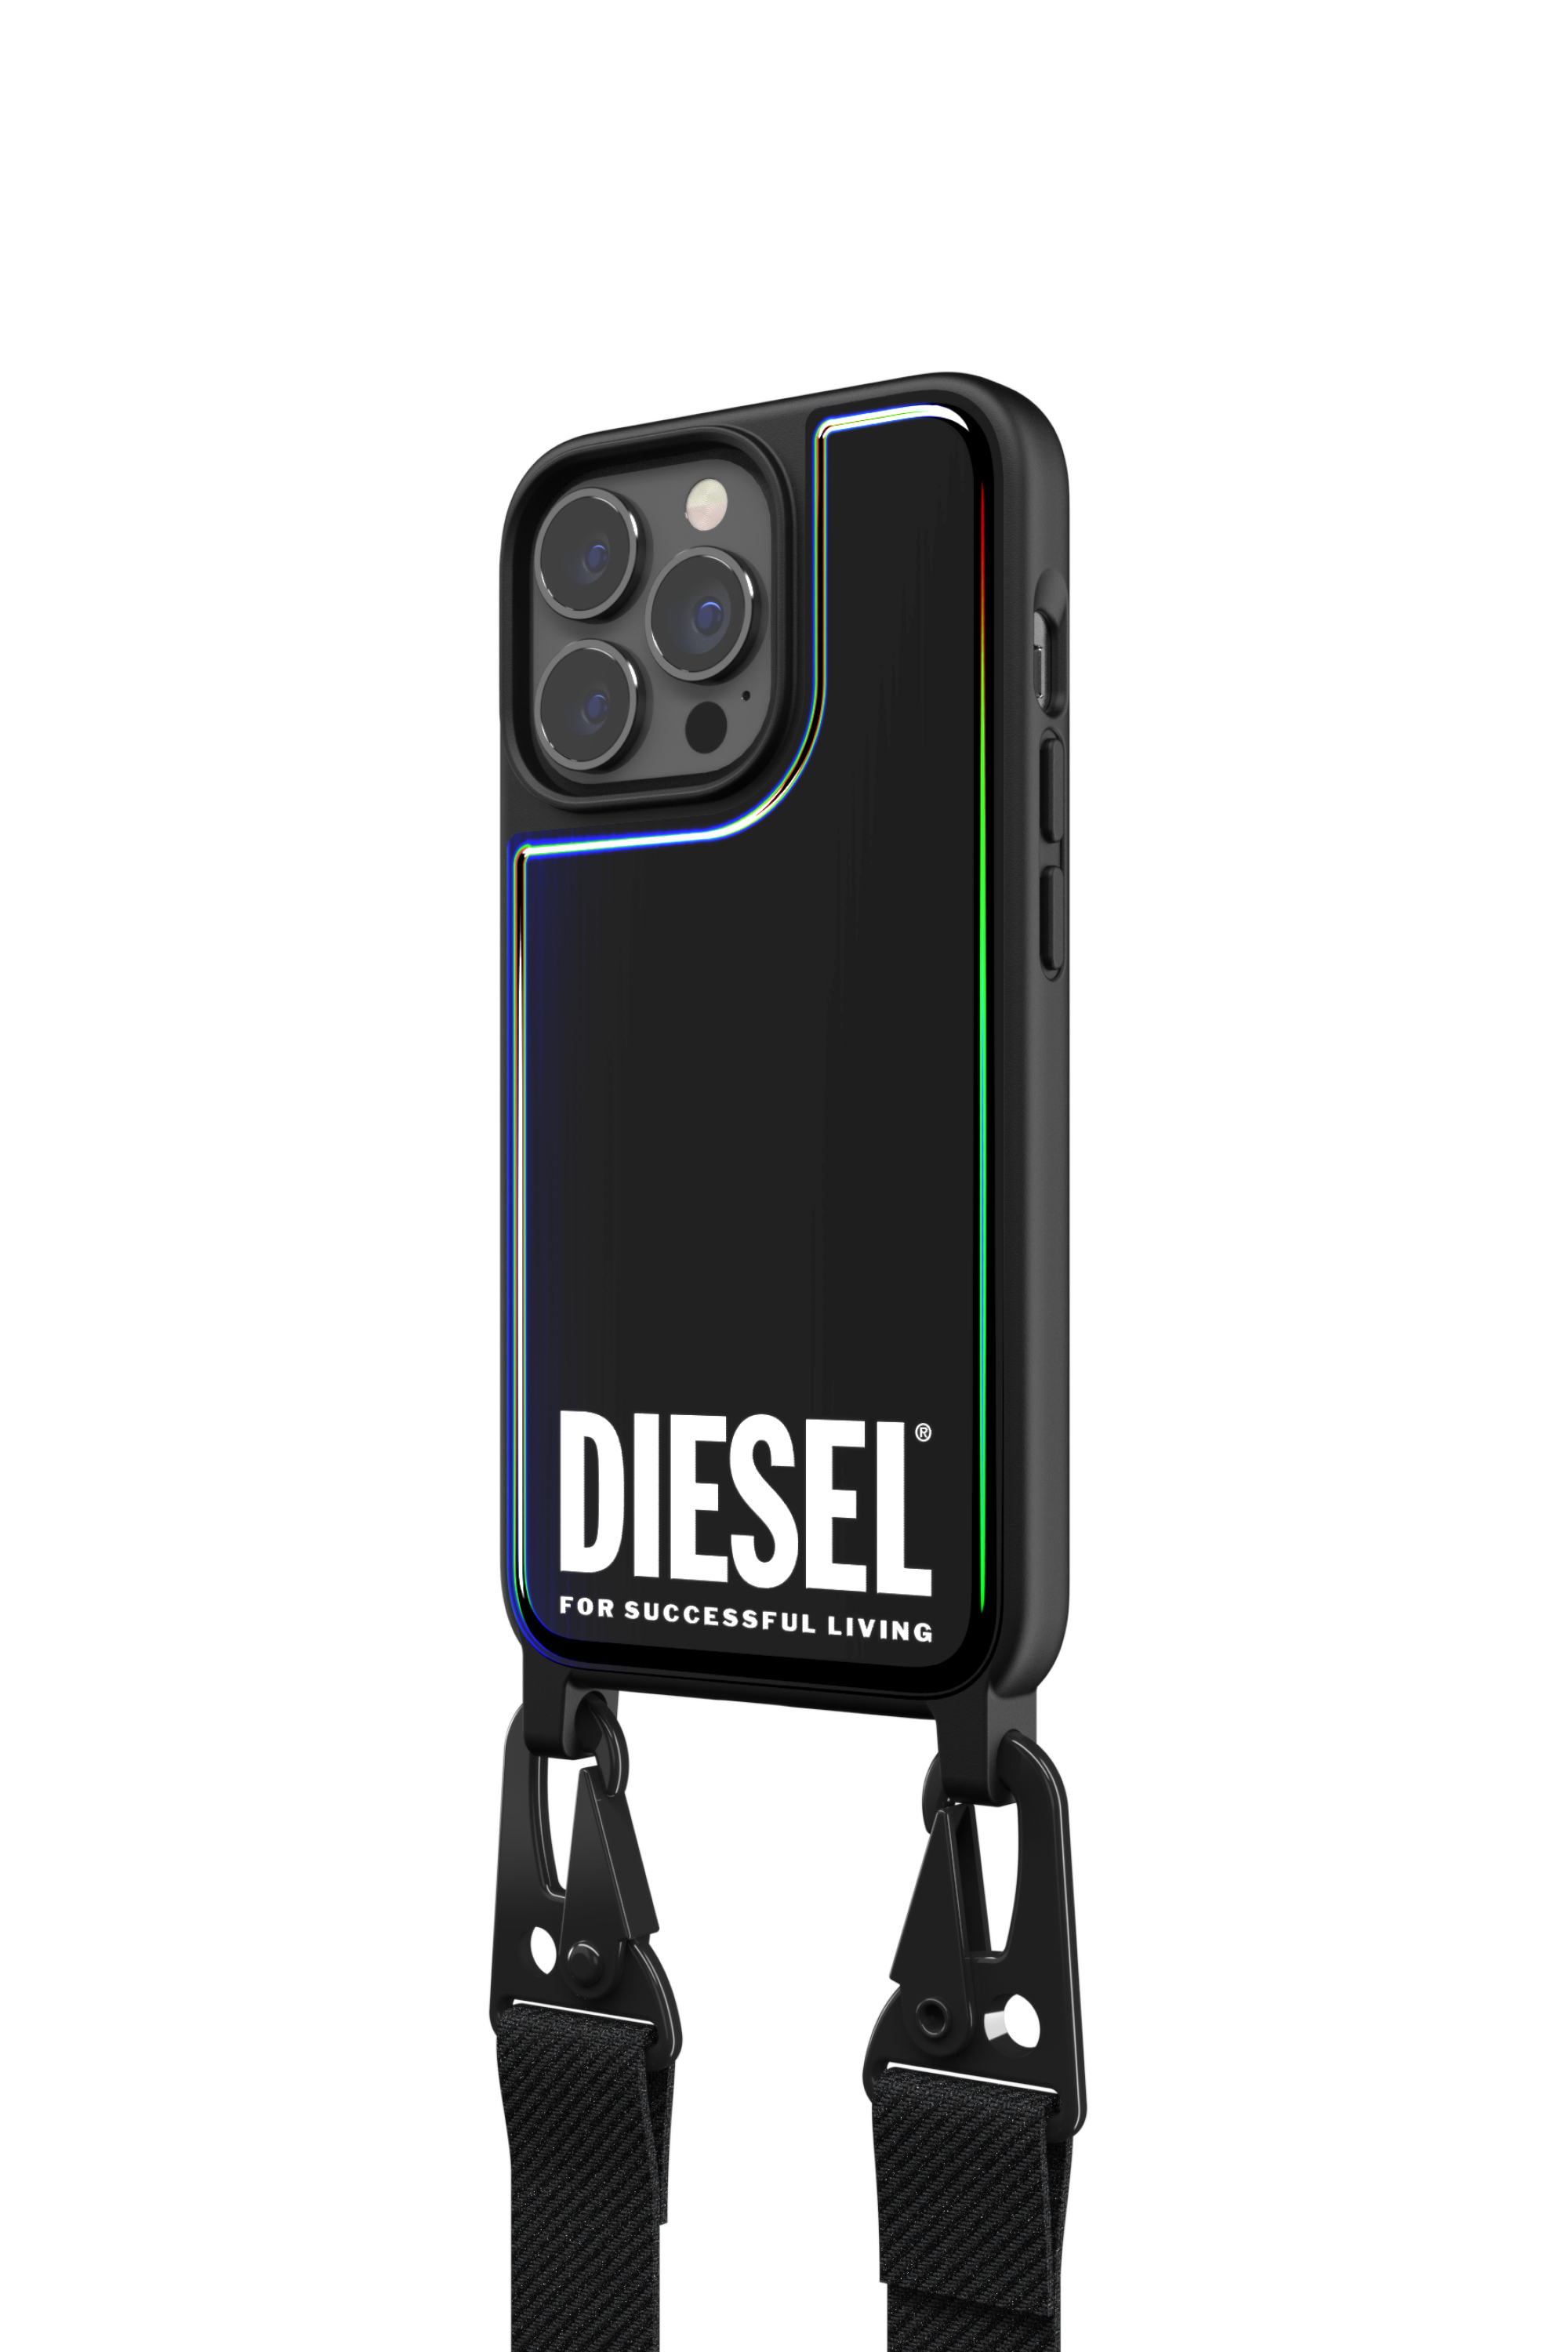 Diesel - 47171 NECKLACE CASE, Bunt/Schwarz - Image 4